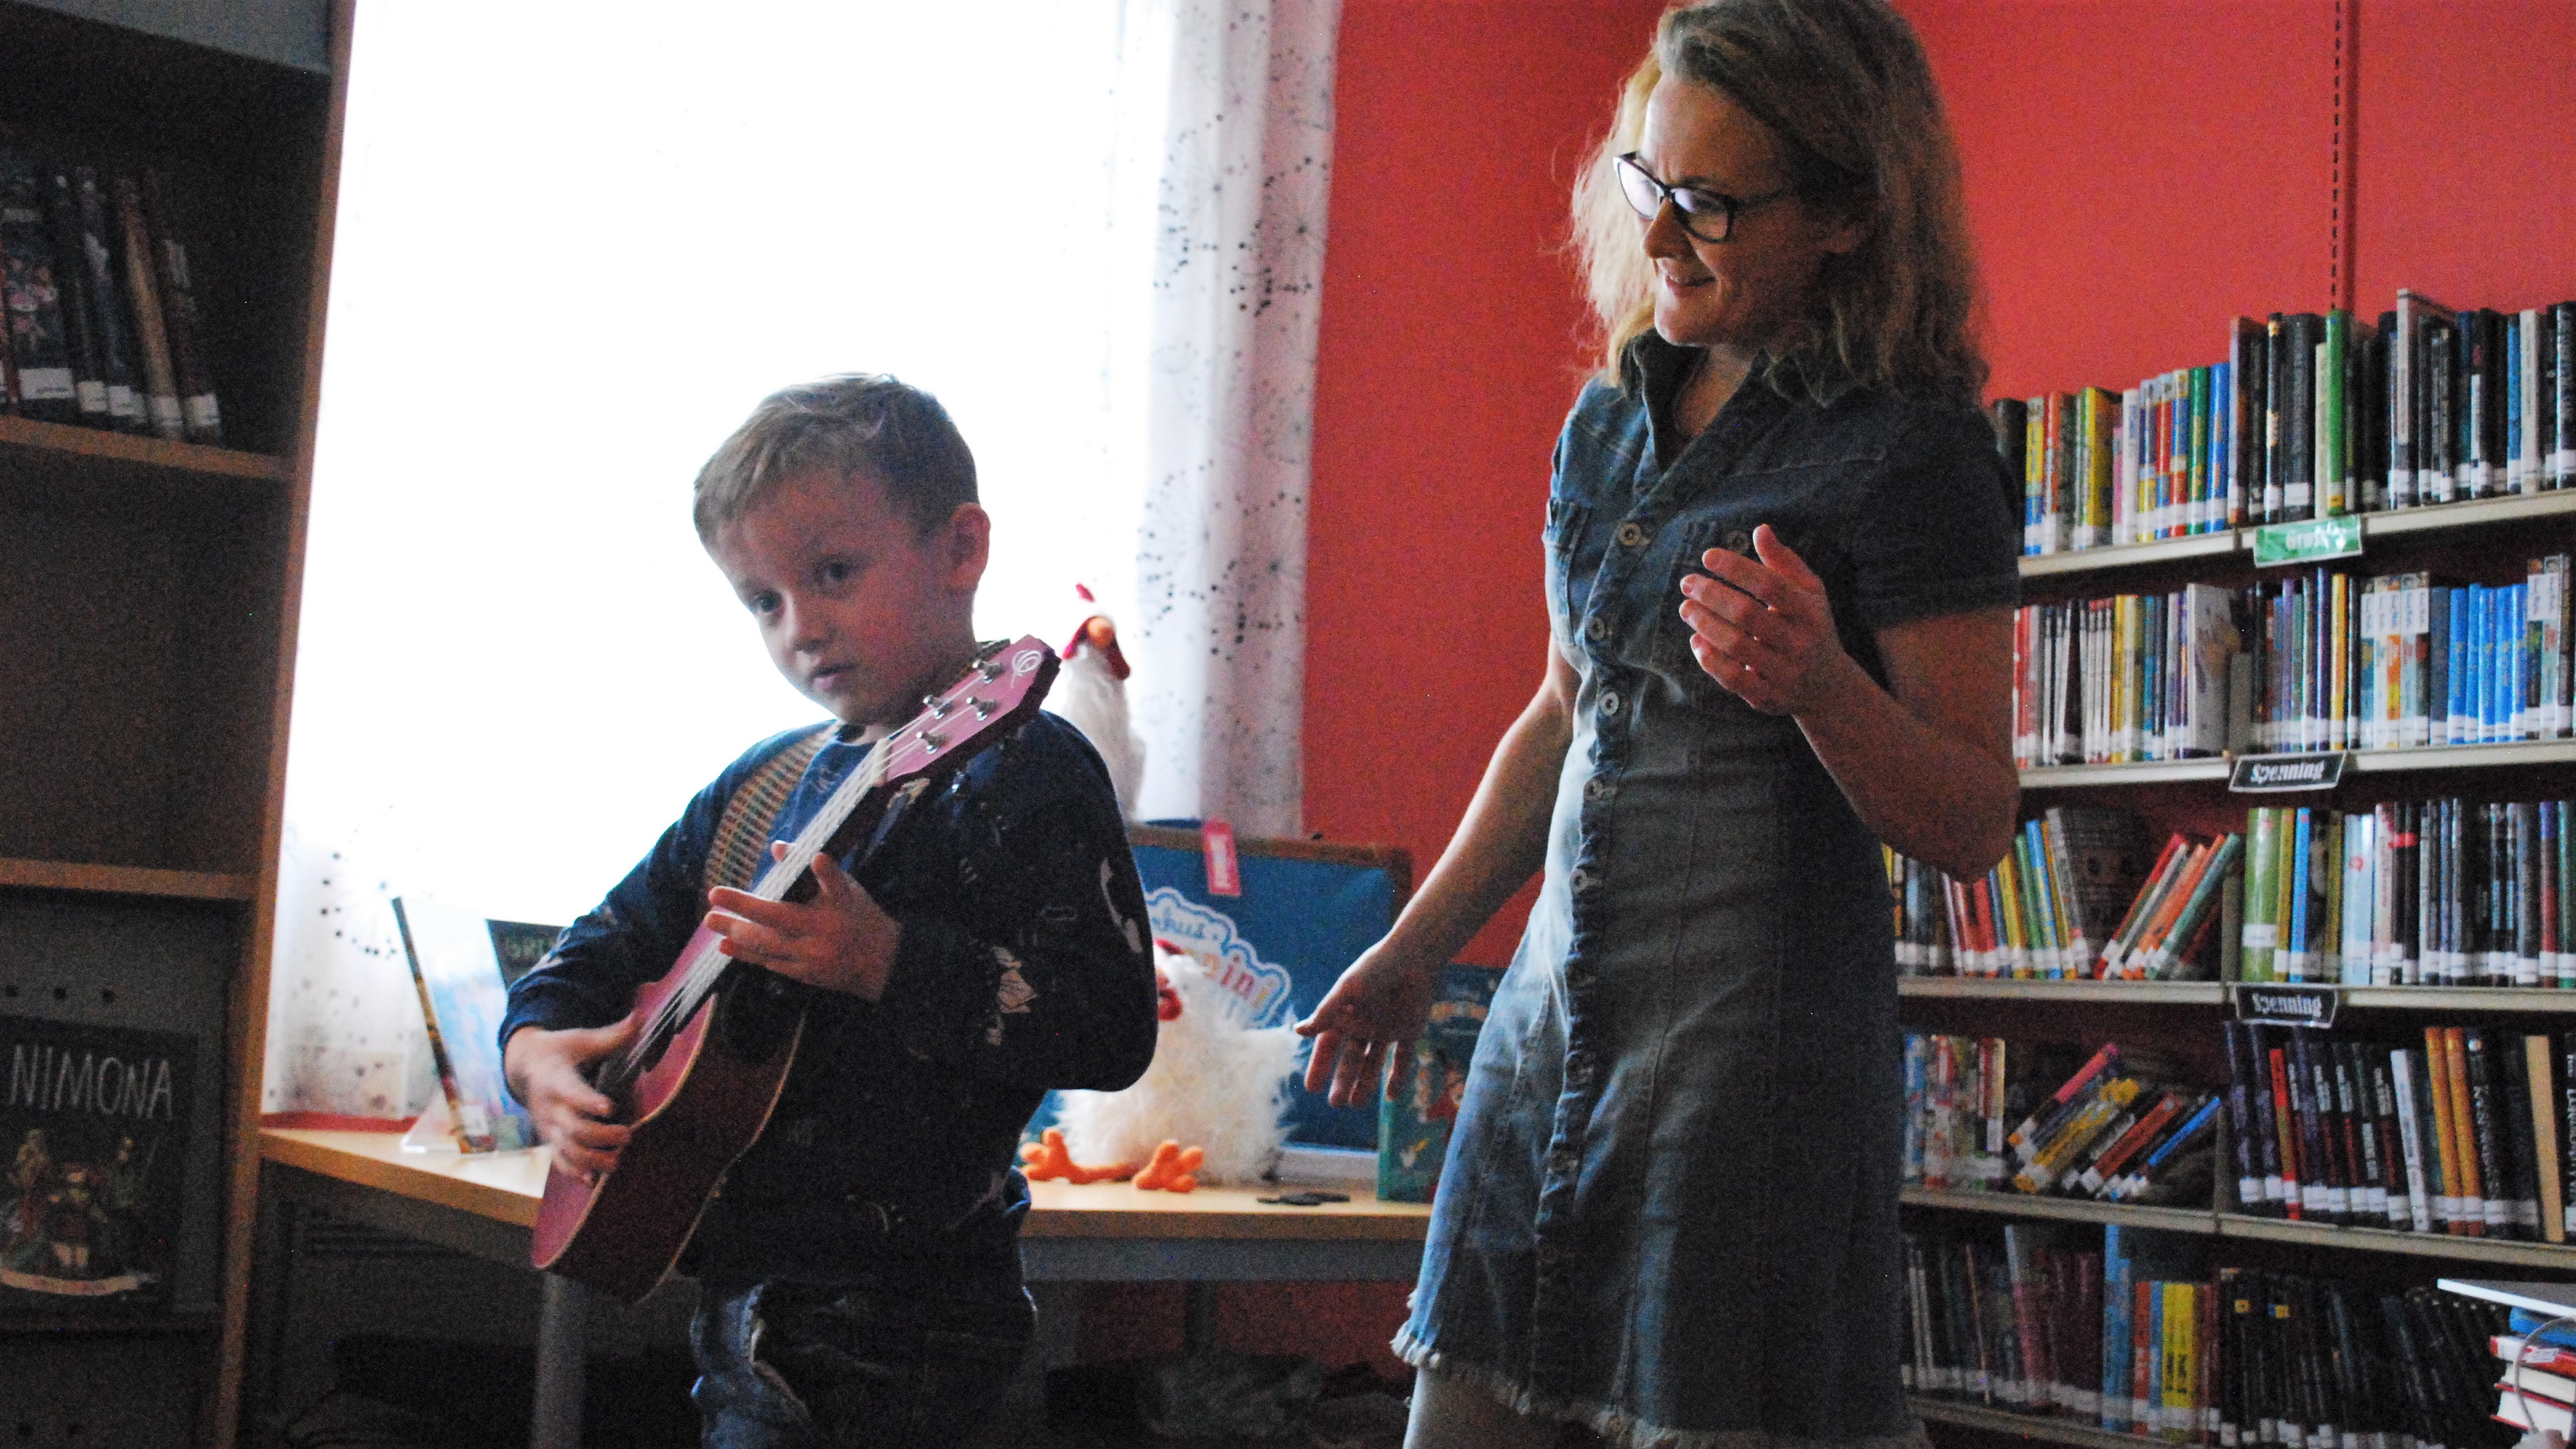 Da boka var ferdiglest fikk alle barna som ville, prøvespille på ukulele.